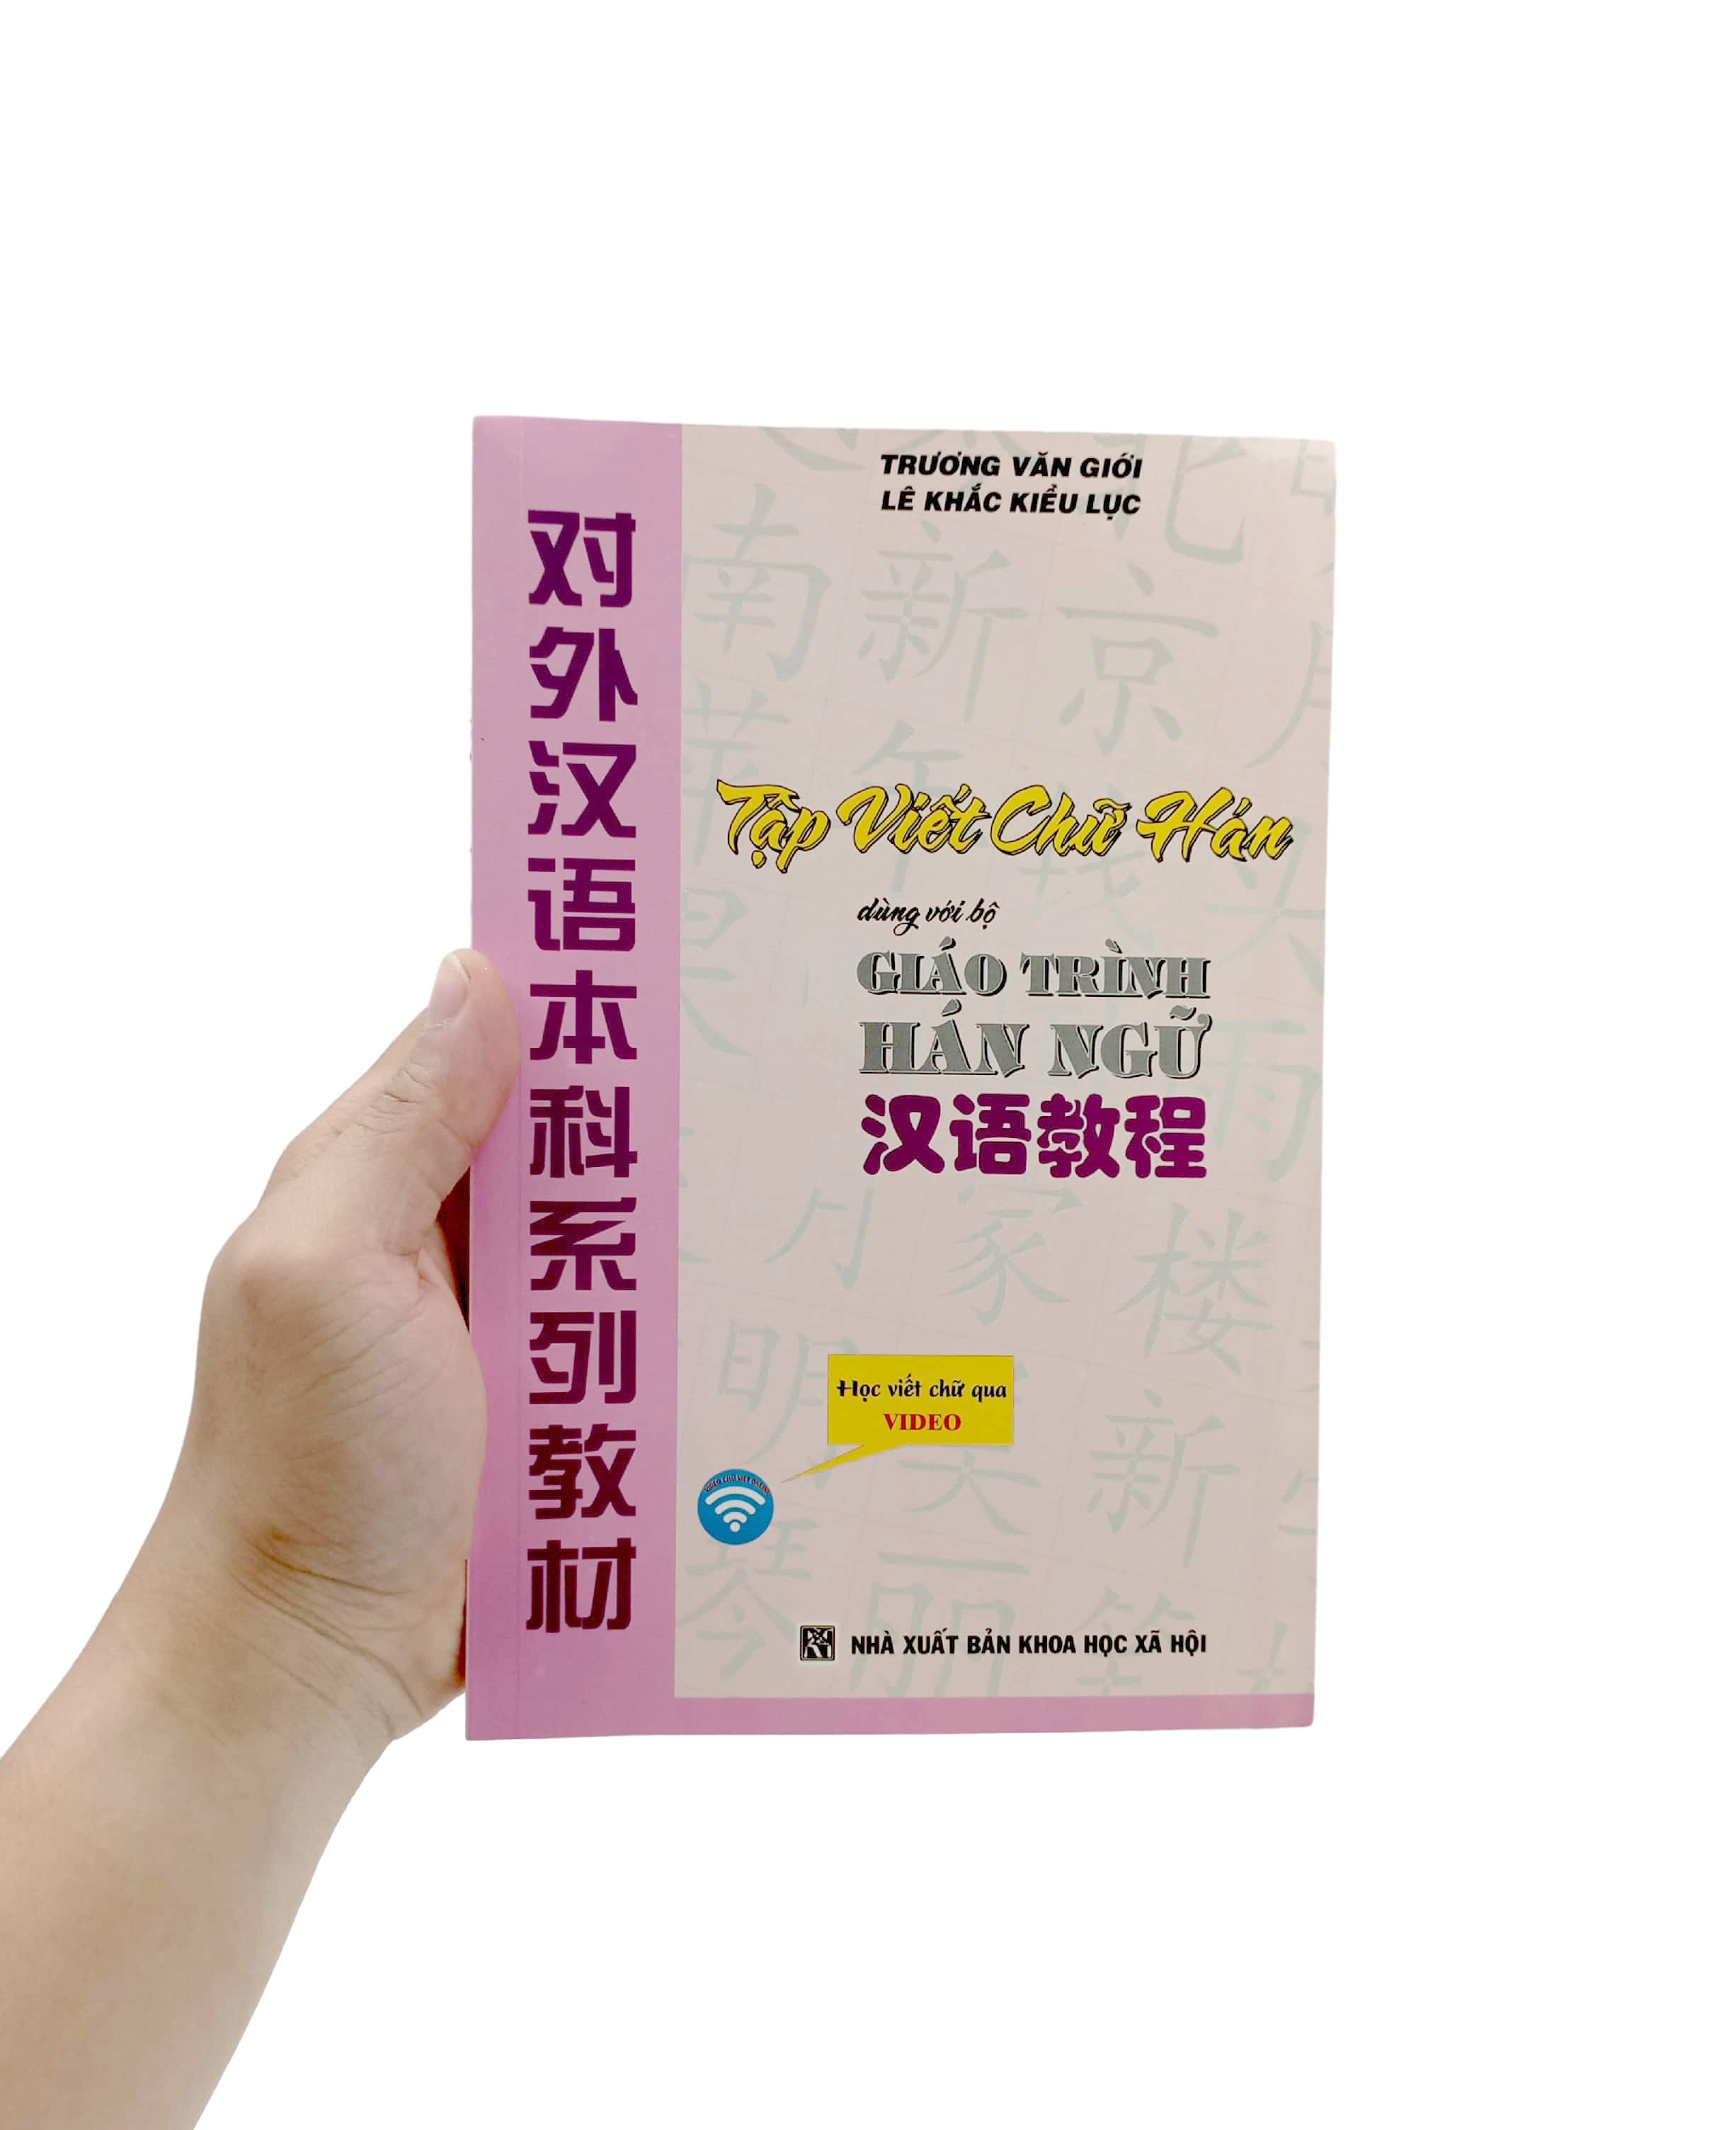 Tập Viết Chữ Hán Dùng Với Bộ Giáo Trình Hán Ngữ PDF